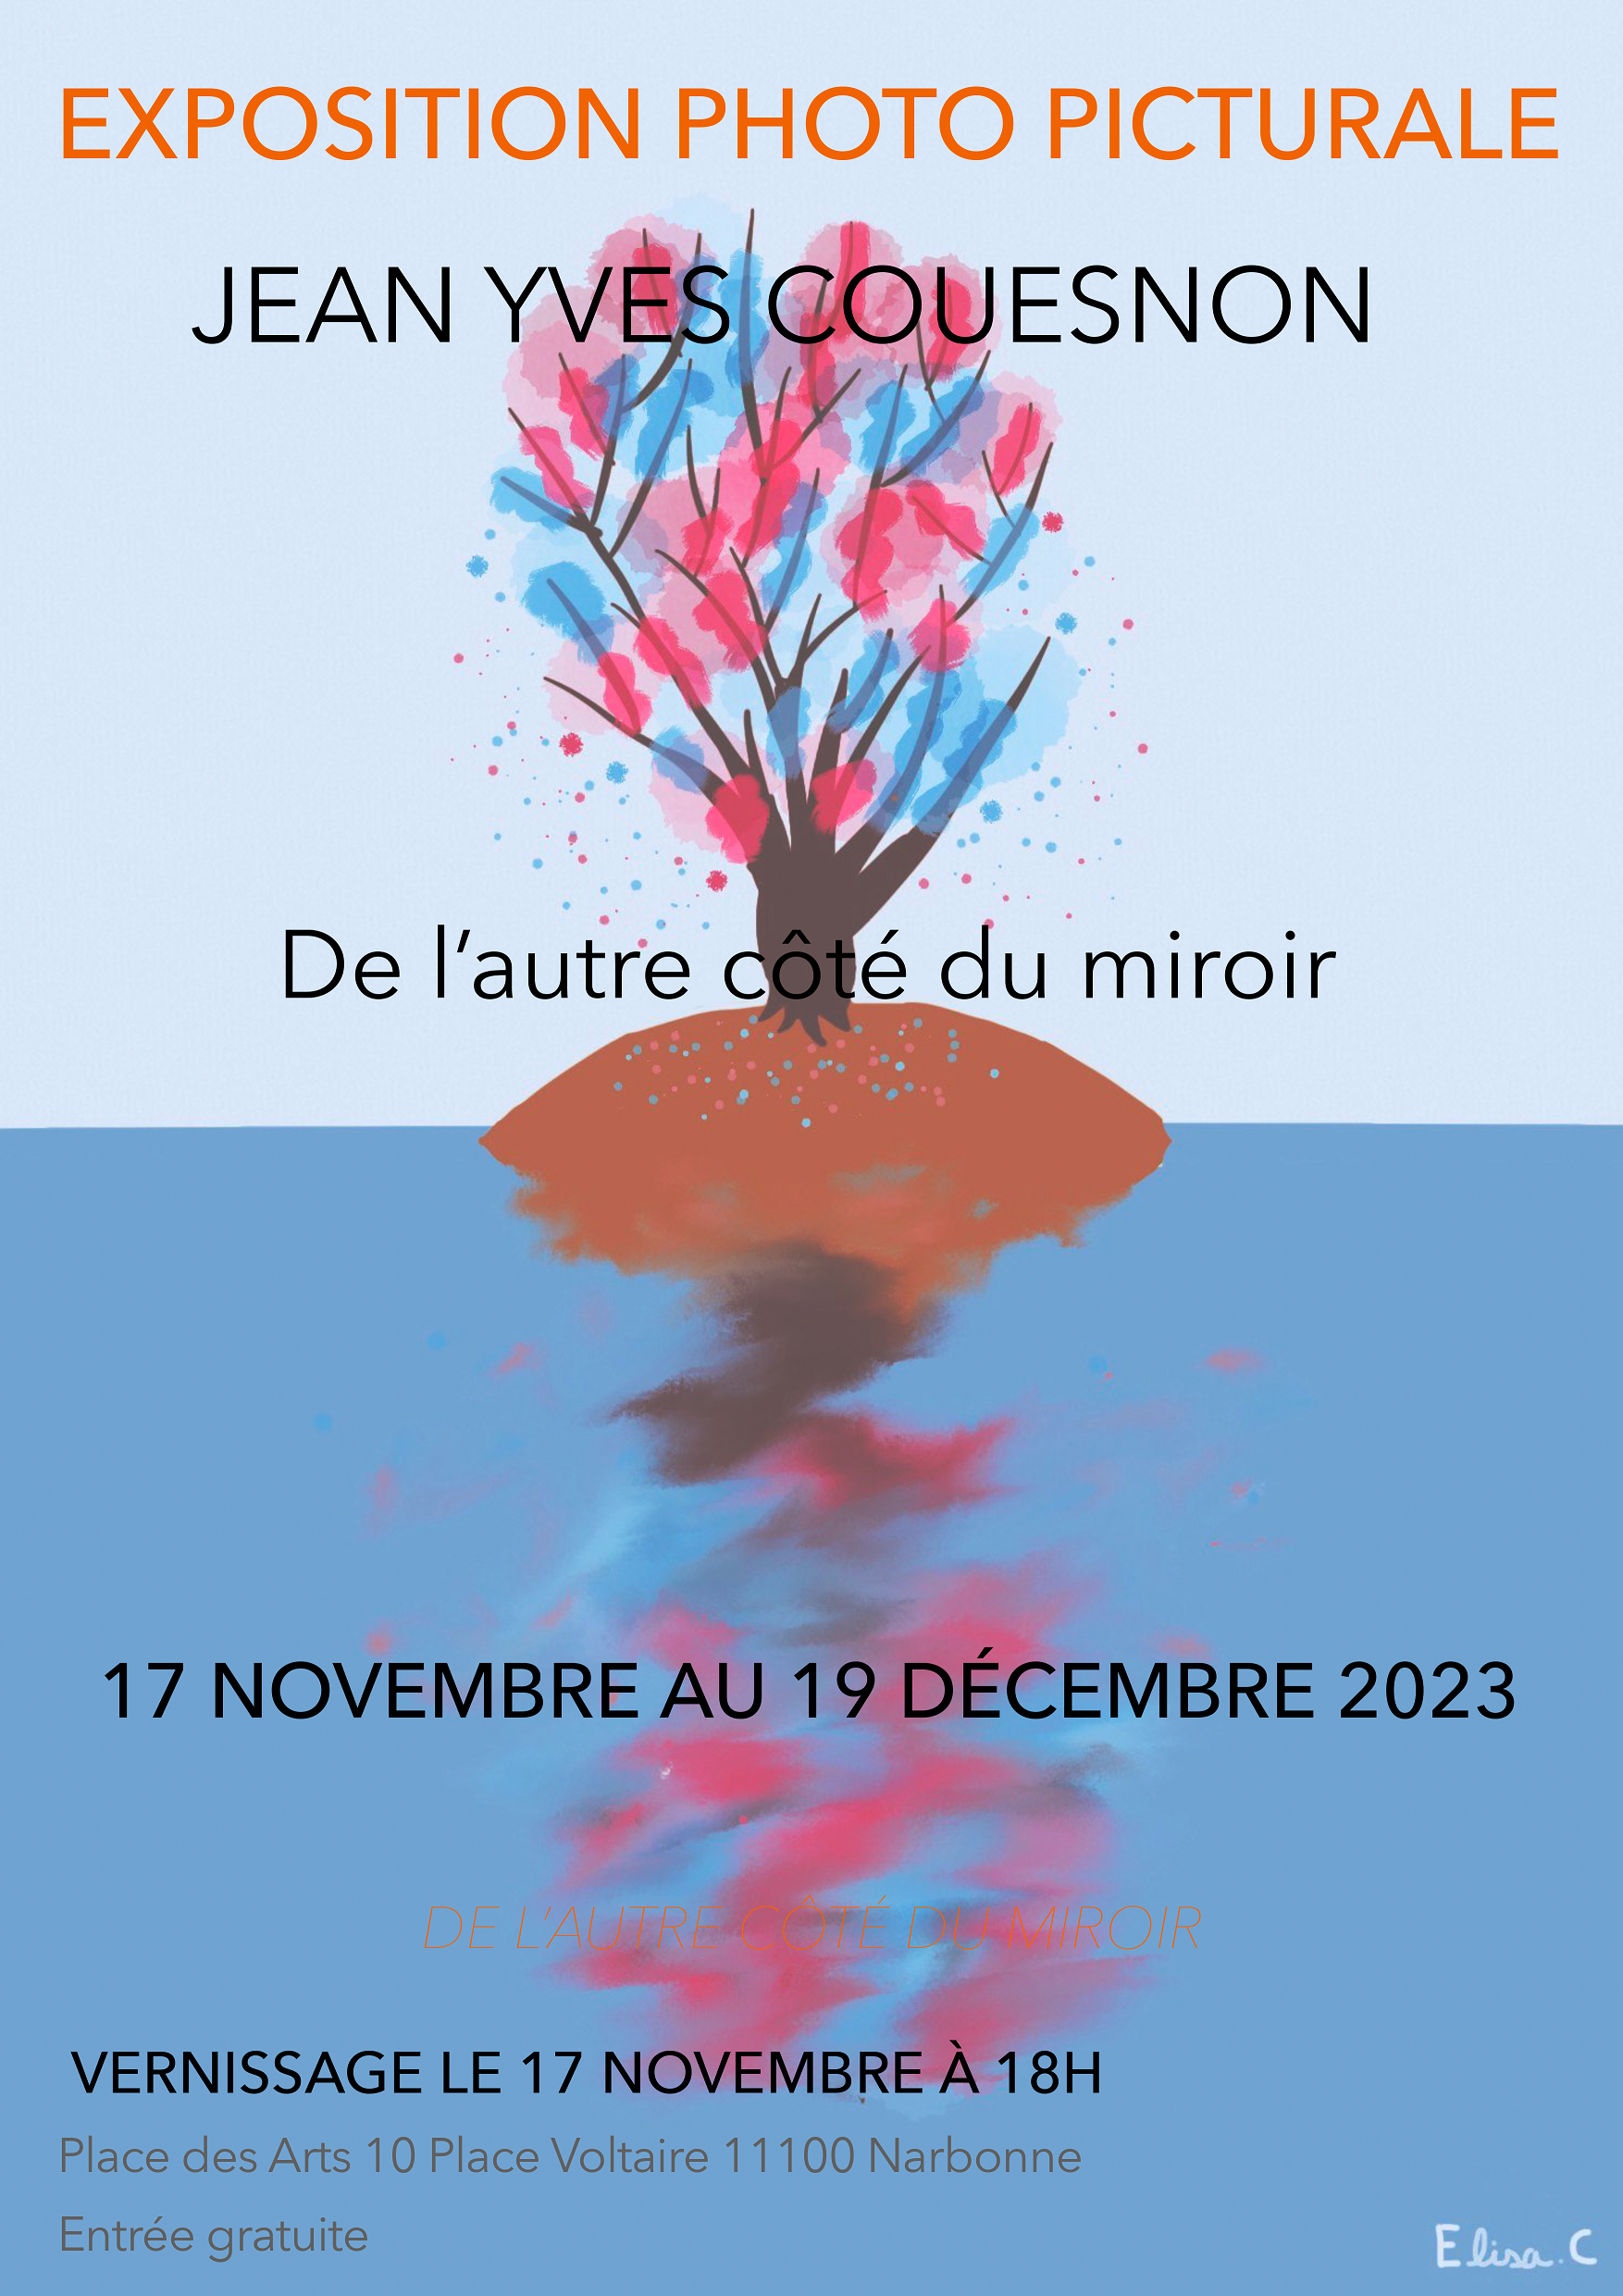 Jean-Yves Couesnon "De l'autre côté du miroir"